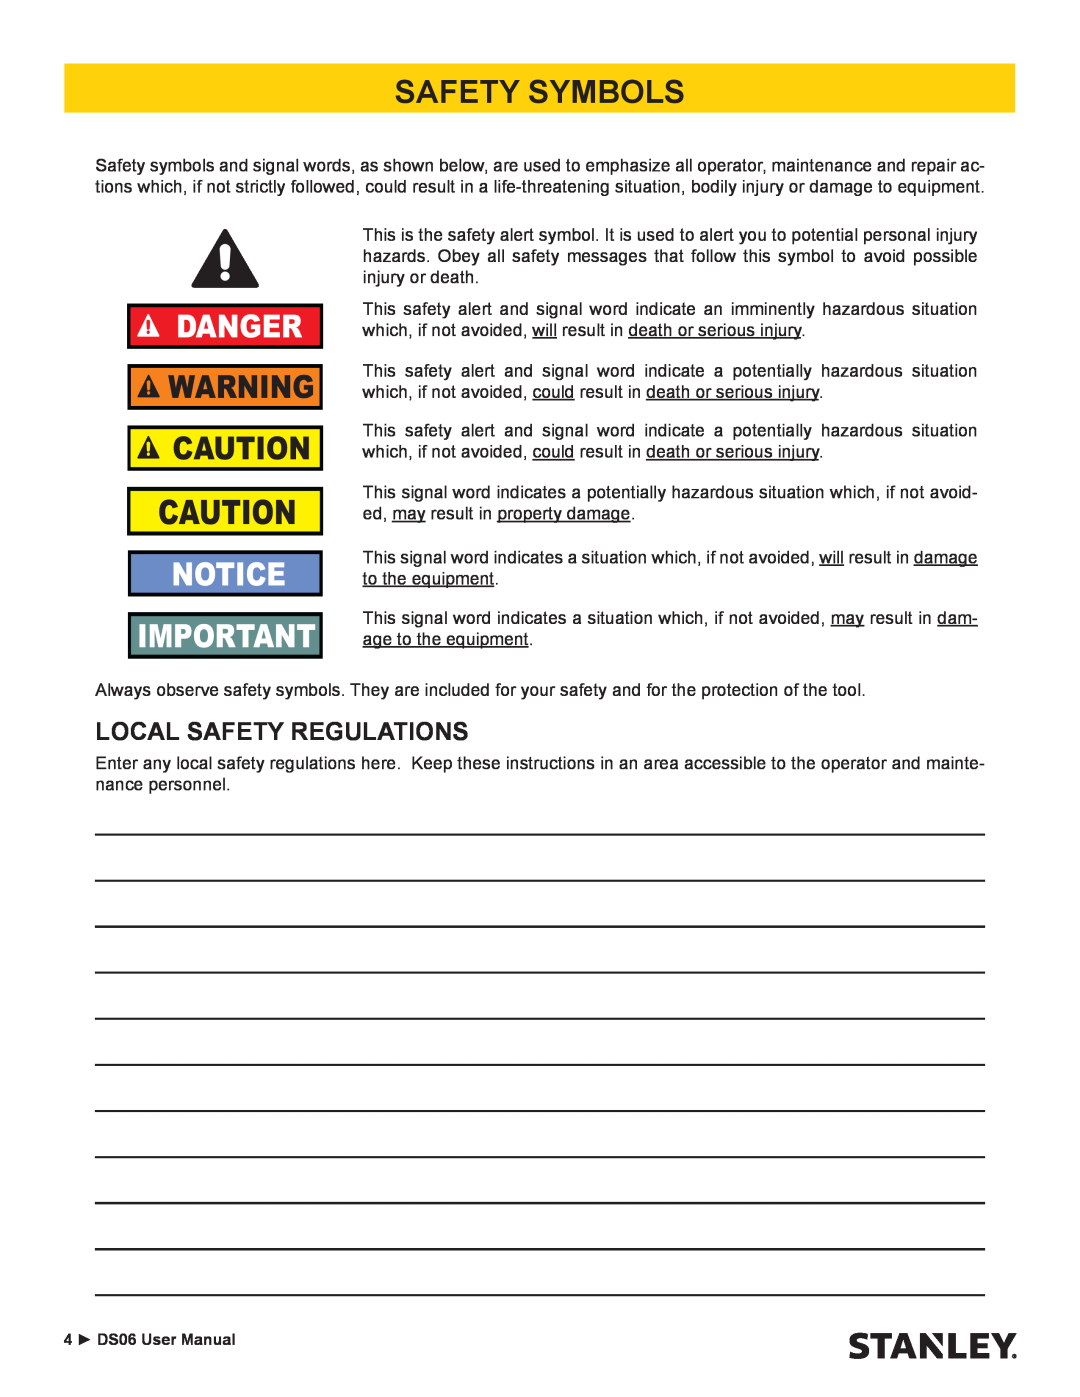 Stanley Black & Decker DS06 user manual Safety Symbols, Local Safety Regulations, Danger 